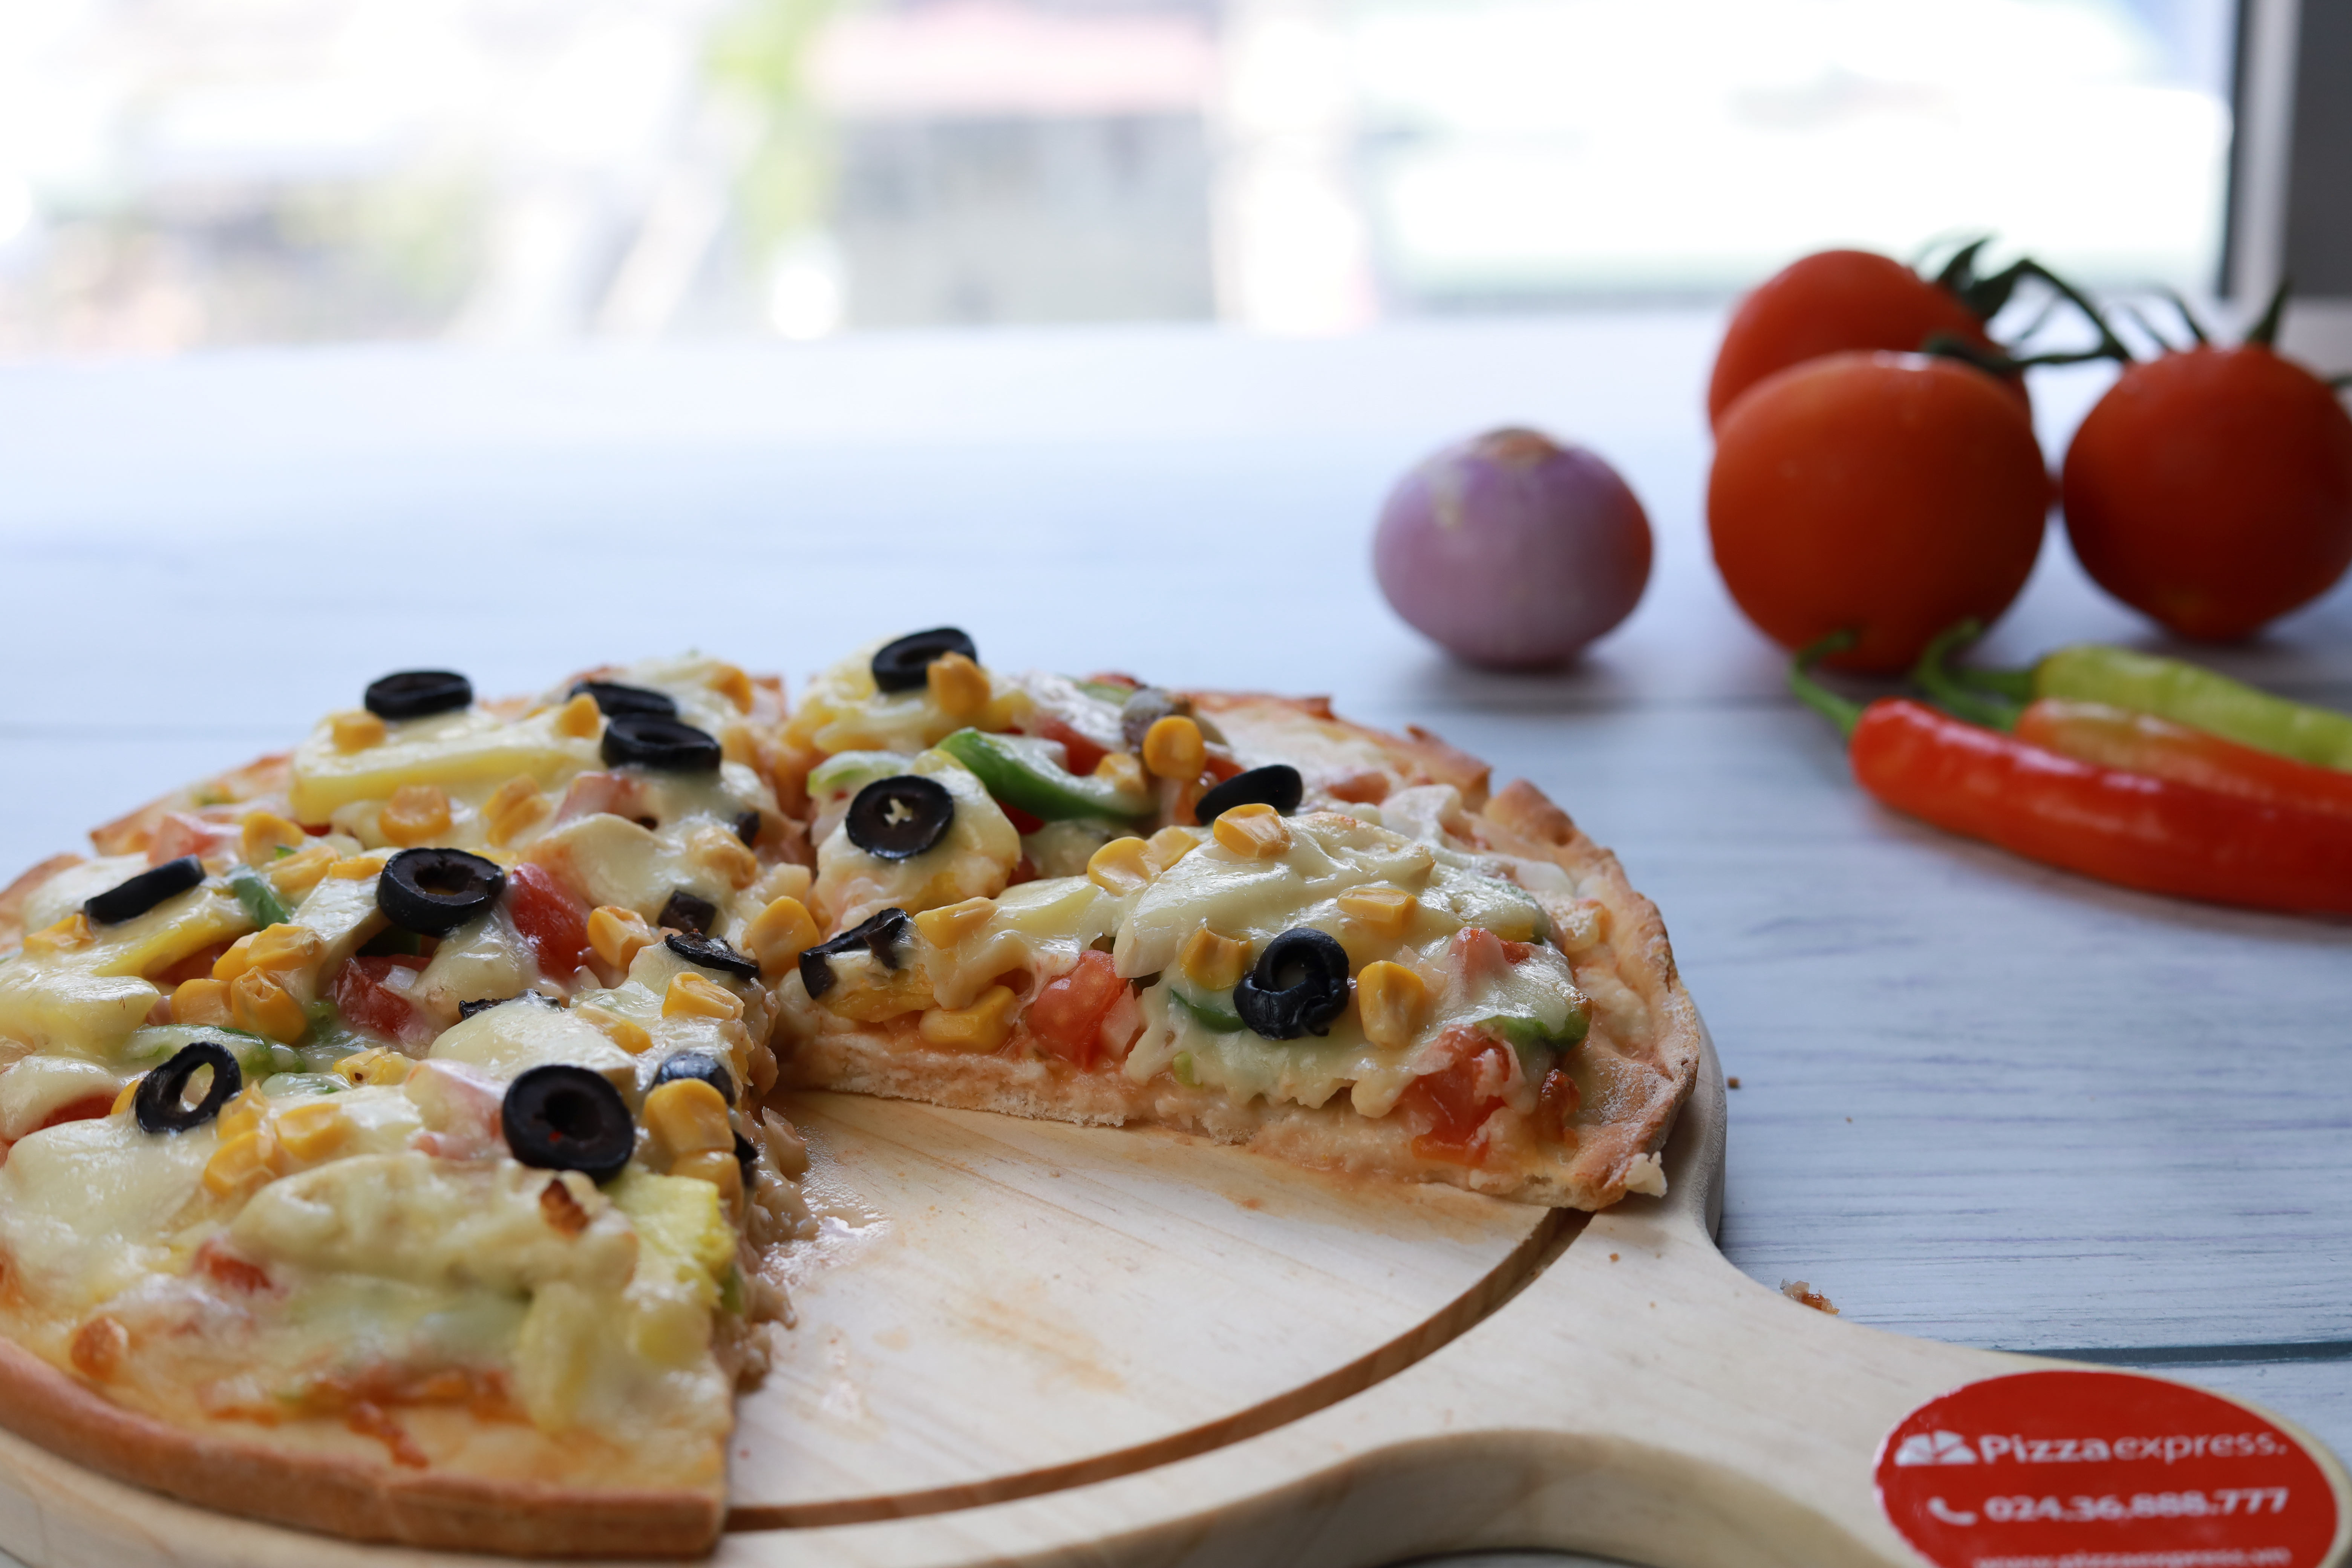 PIZZA EXPRESS MÁCH MẸO LÀM NƯỚC SỐT CÀ CHUA THẦN THÁNH CHUẨN Ý - Pizza Express